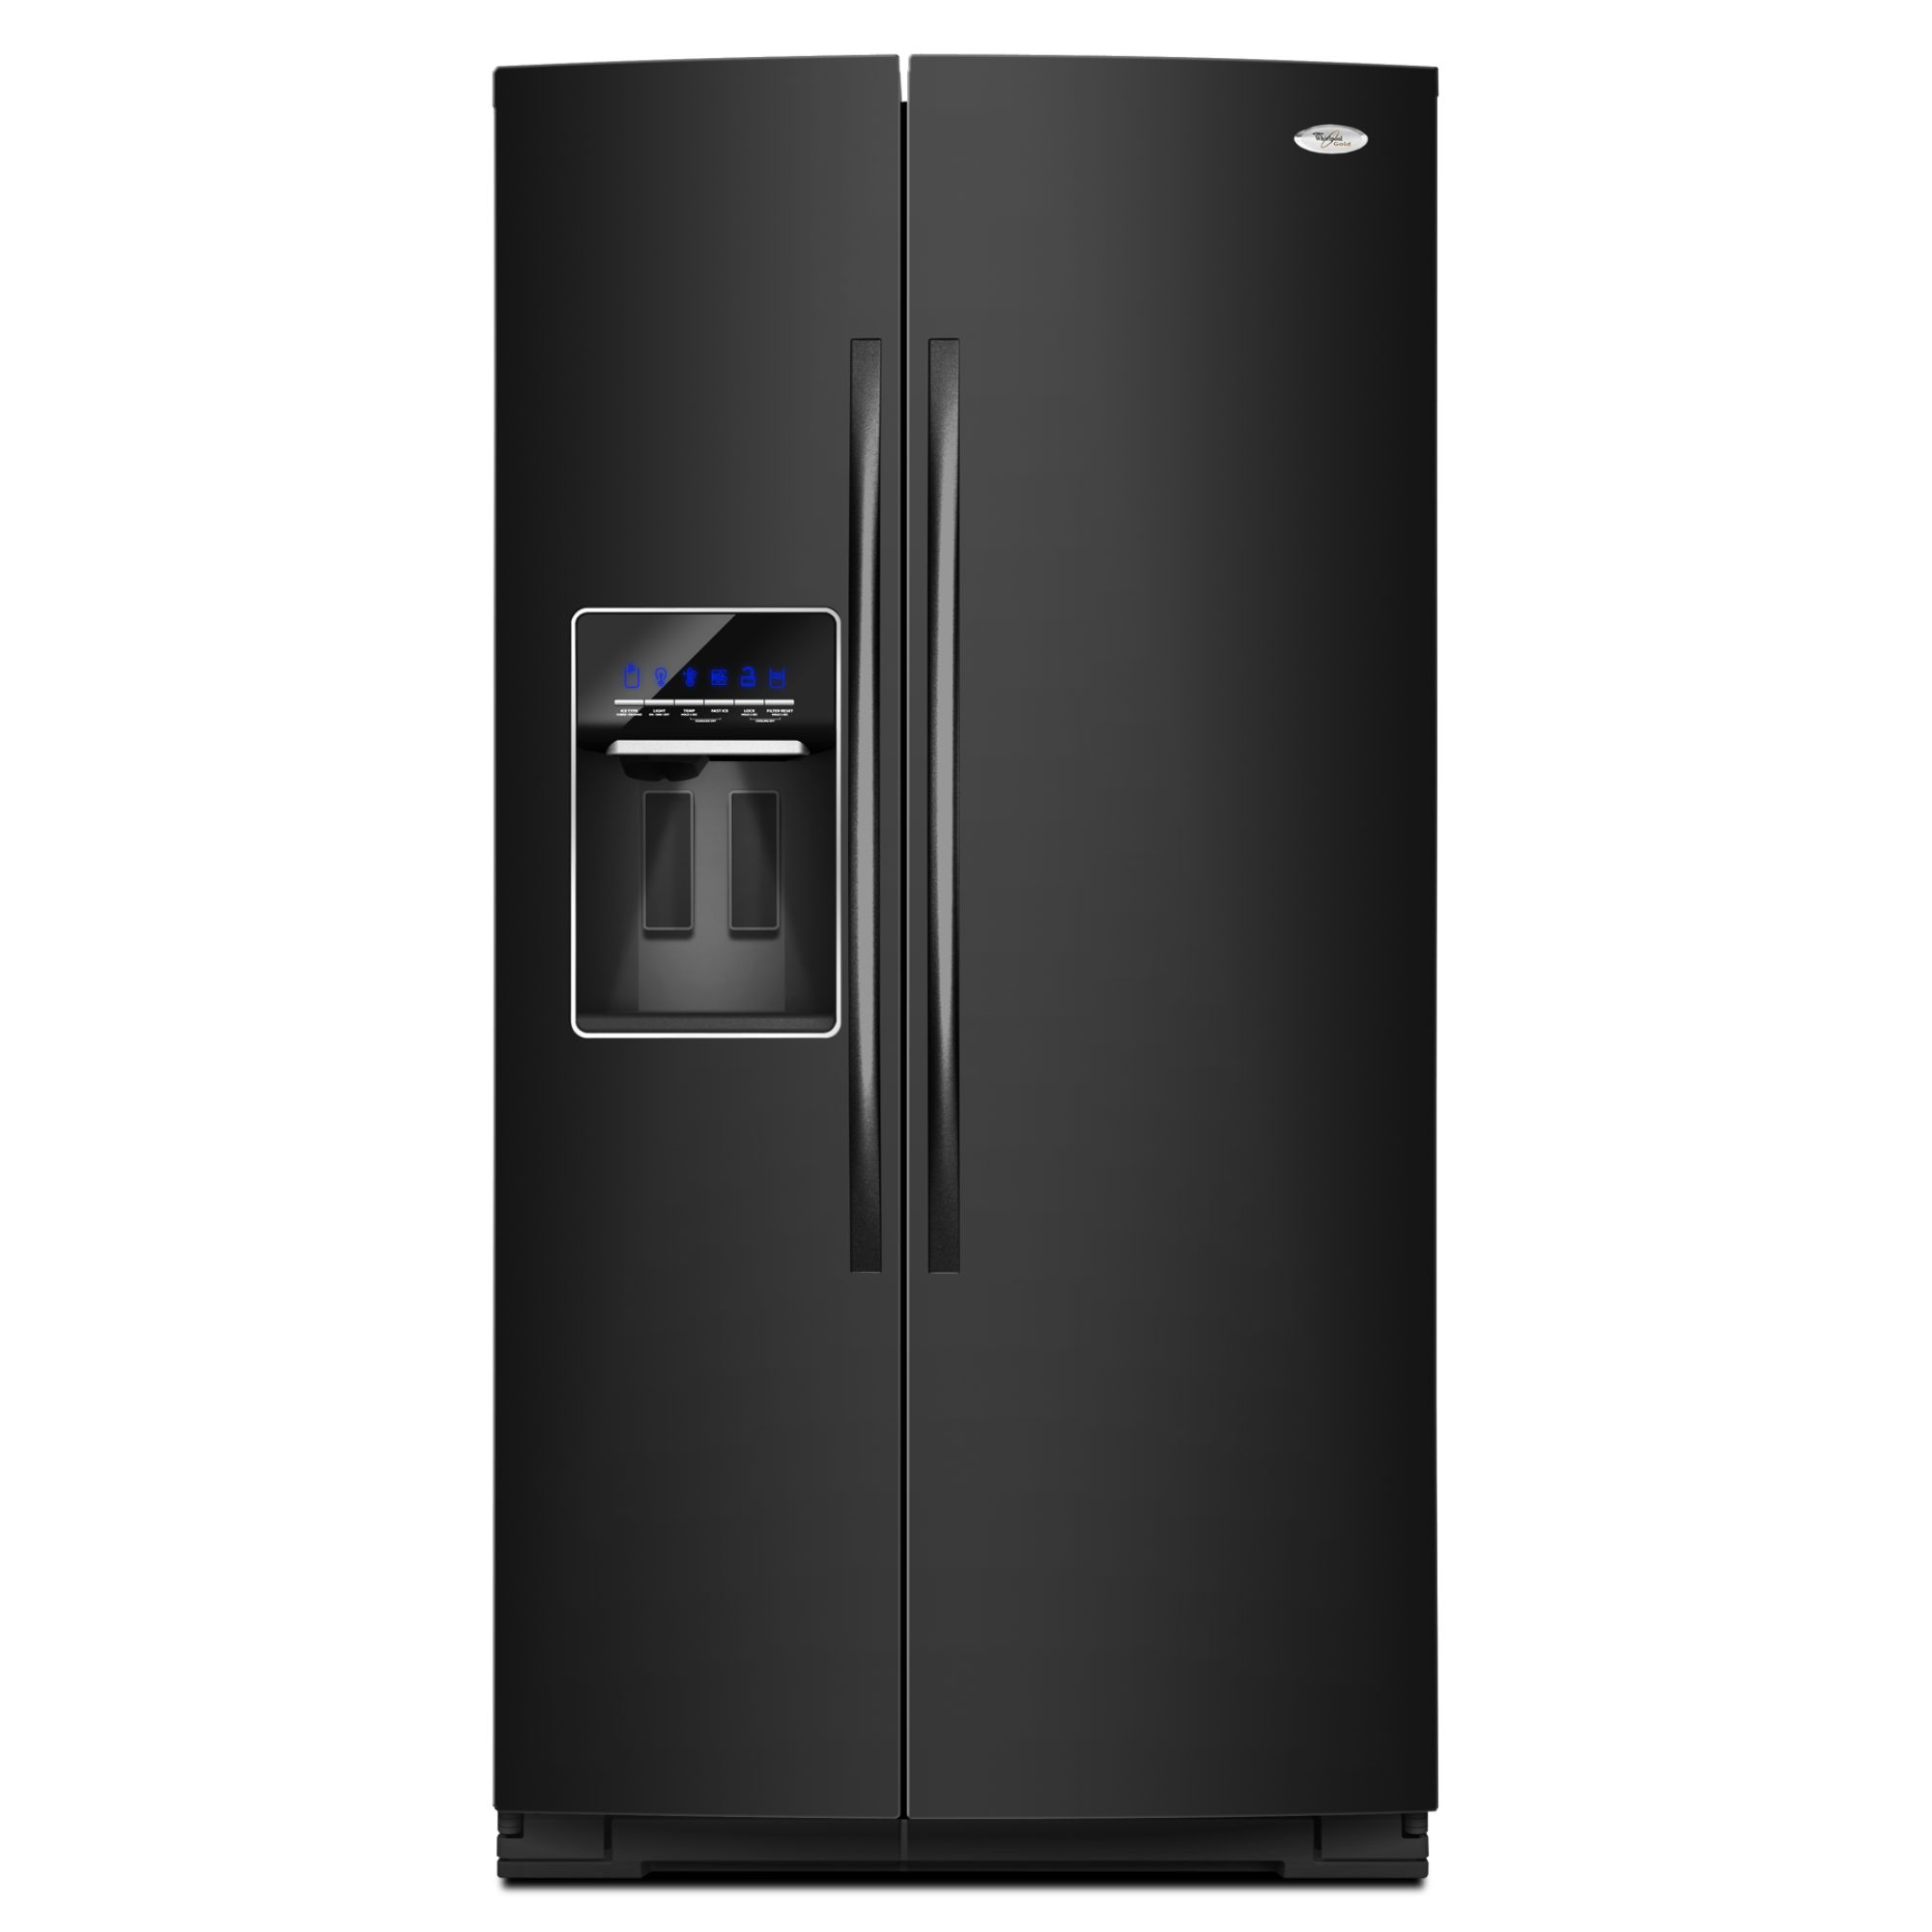 Whirlpool 24.5 cu. ft. Side-by-Side Refrigerator w/ In-Door-Ice, Black